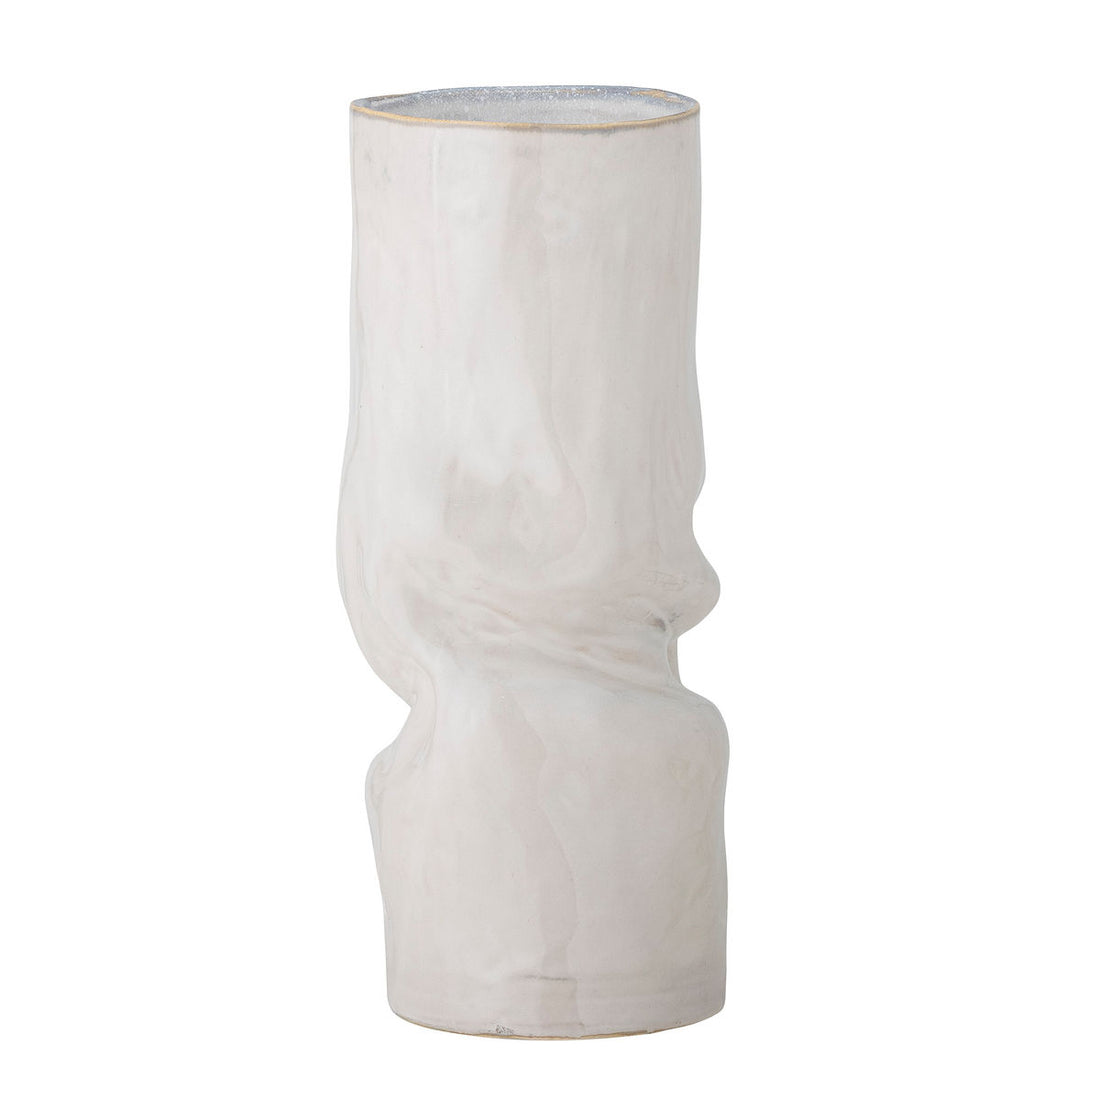 Bloomingville Araba Vase, weiß, Steinzeug